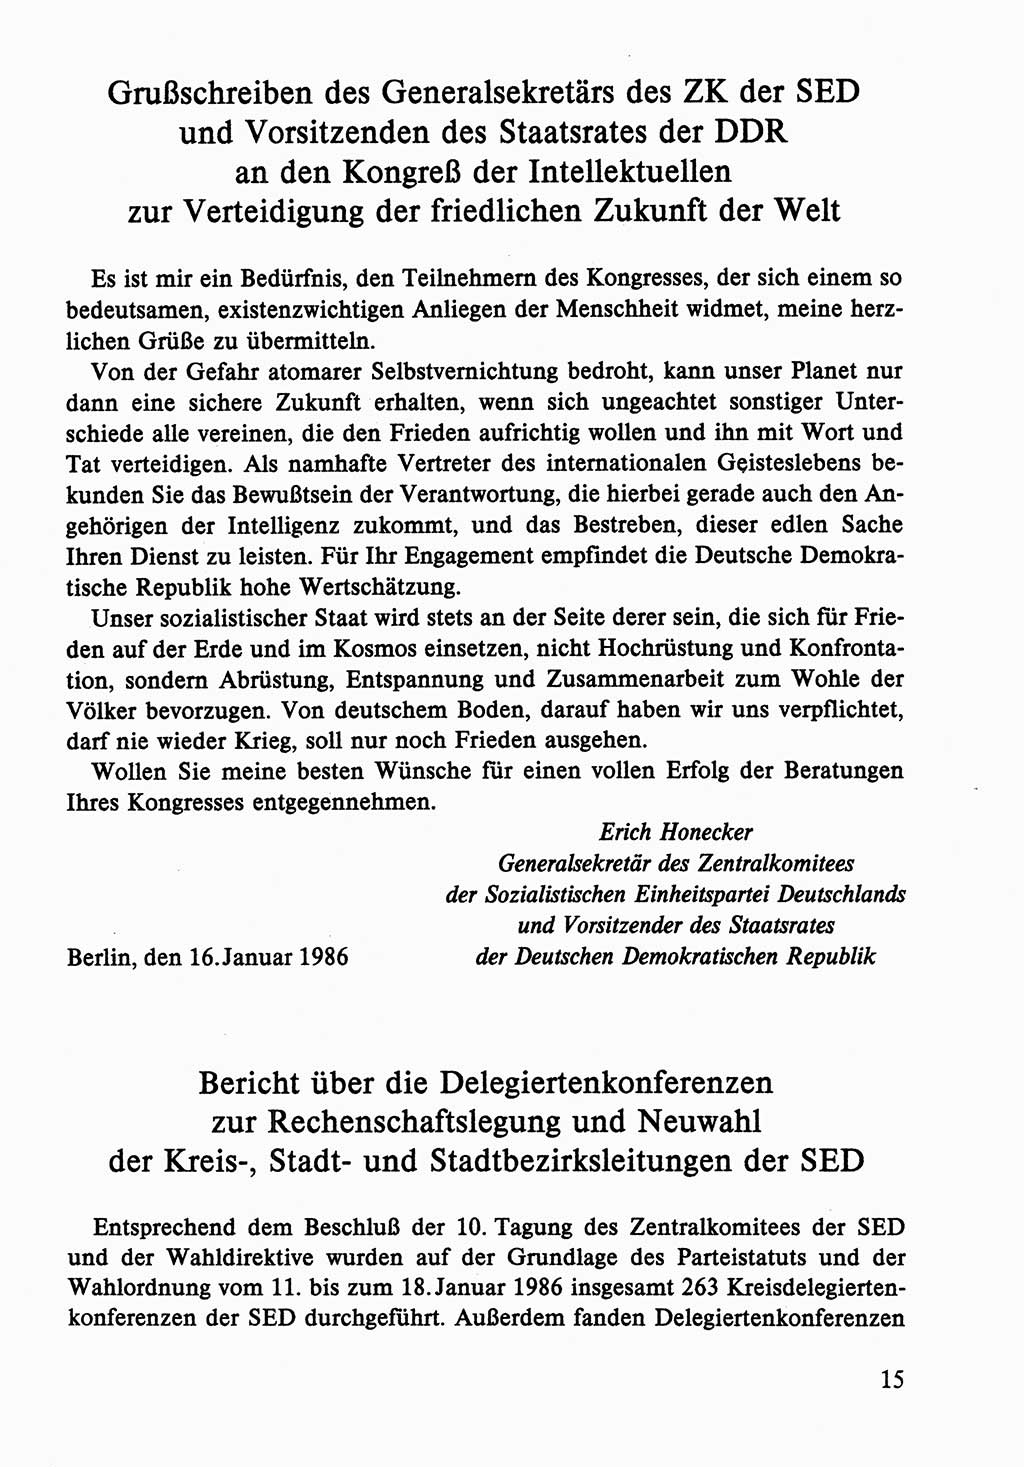 Dokumente der Sozialistischen Einheitspartei Deutschlands (SED) [Deutsche Demokratische Republik (DDR)] 1986-1987, Seite 15 (Dok. SED DDR 1986-1987, S. 15)